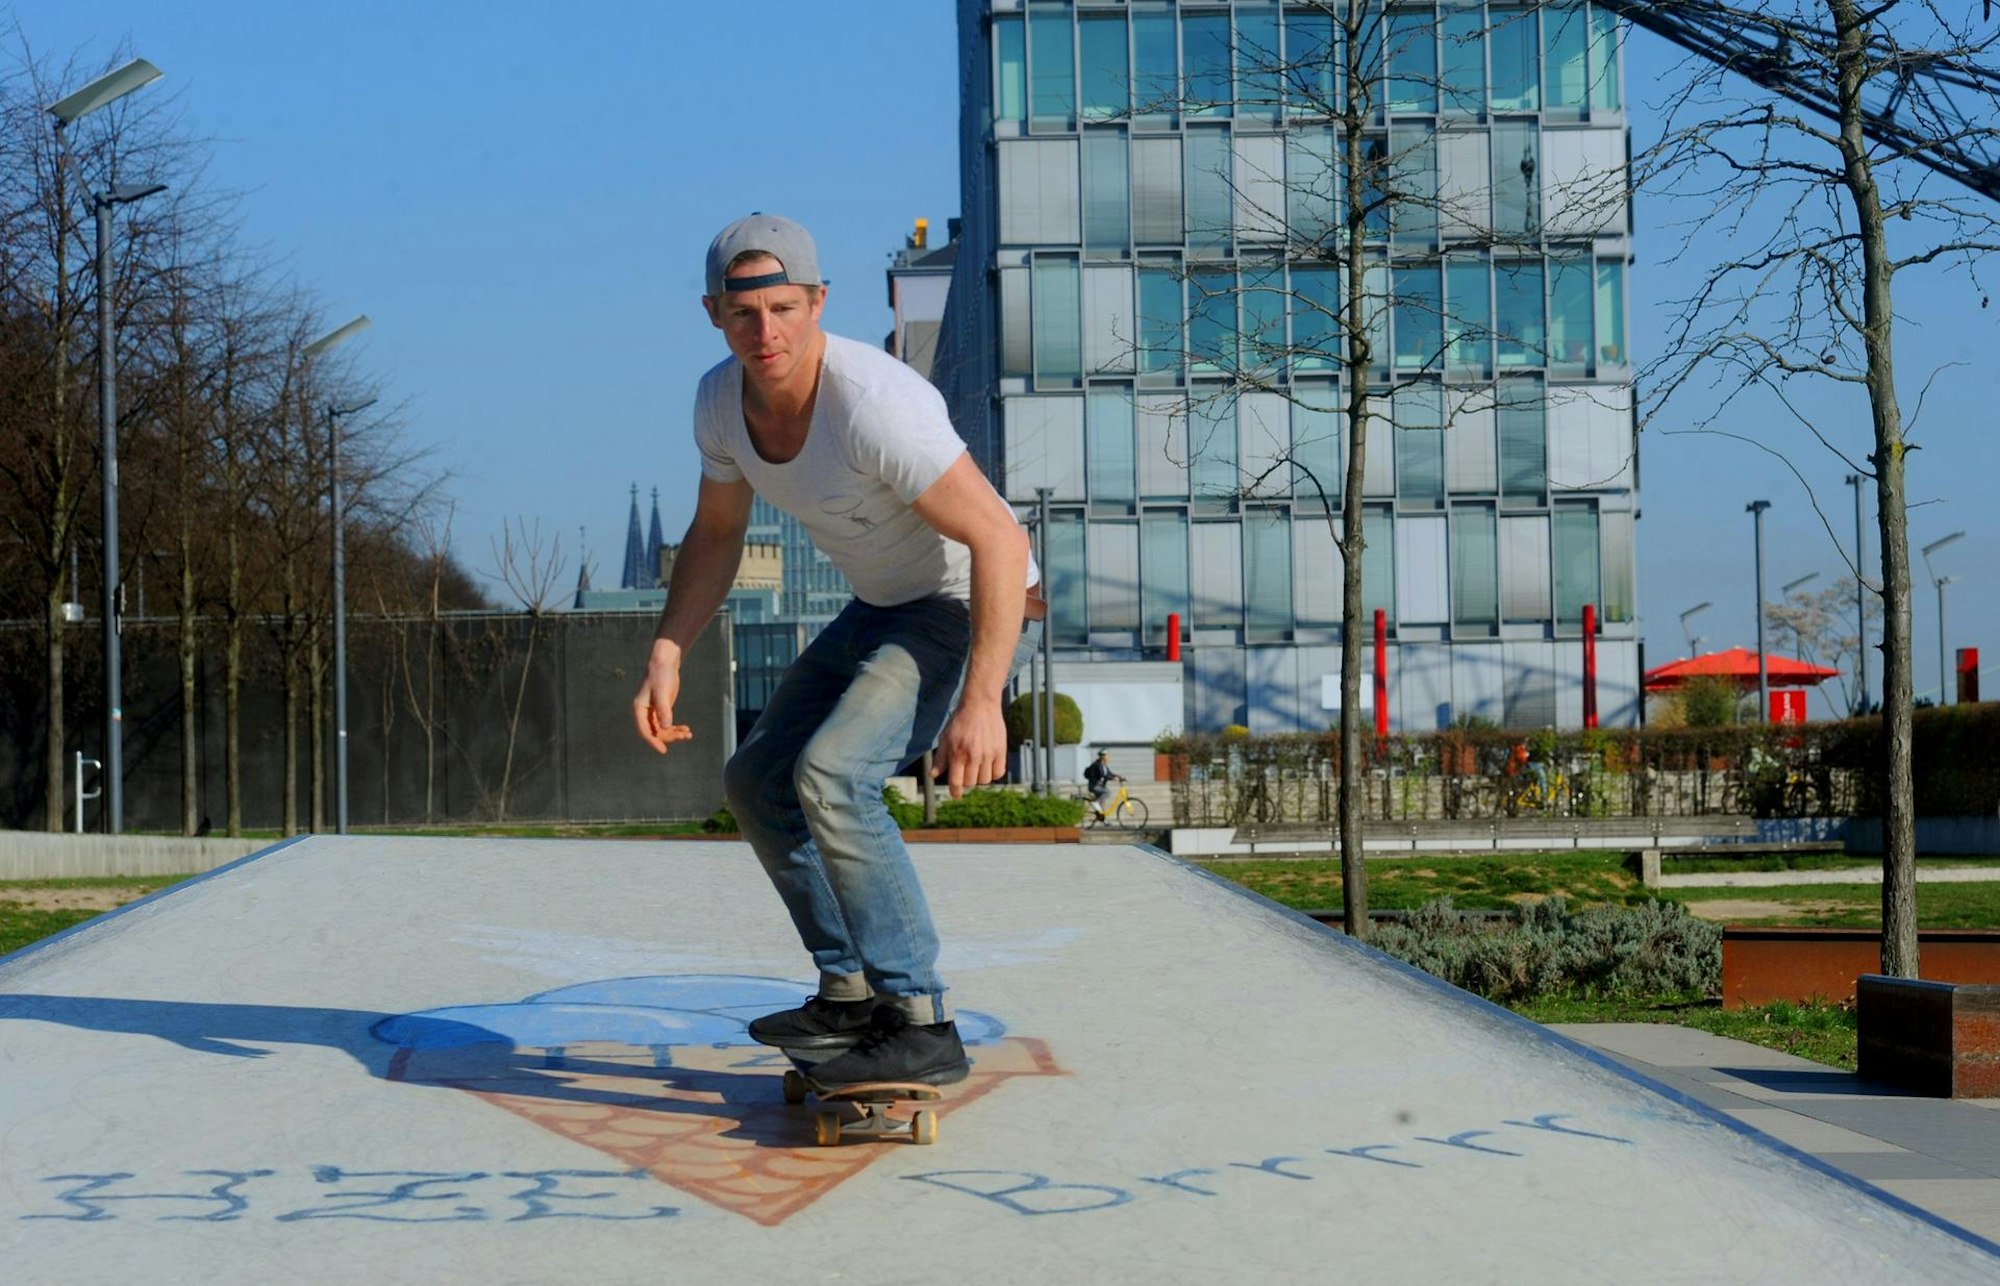 Daniel Roesner Skateboard 250417